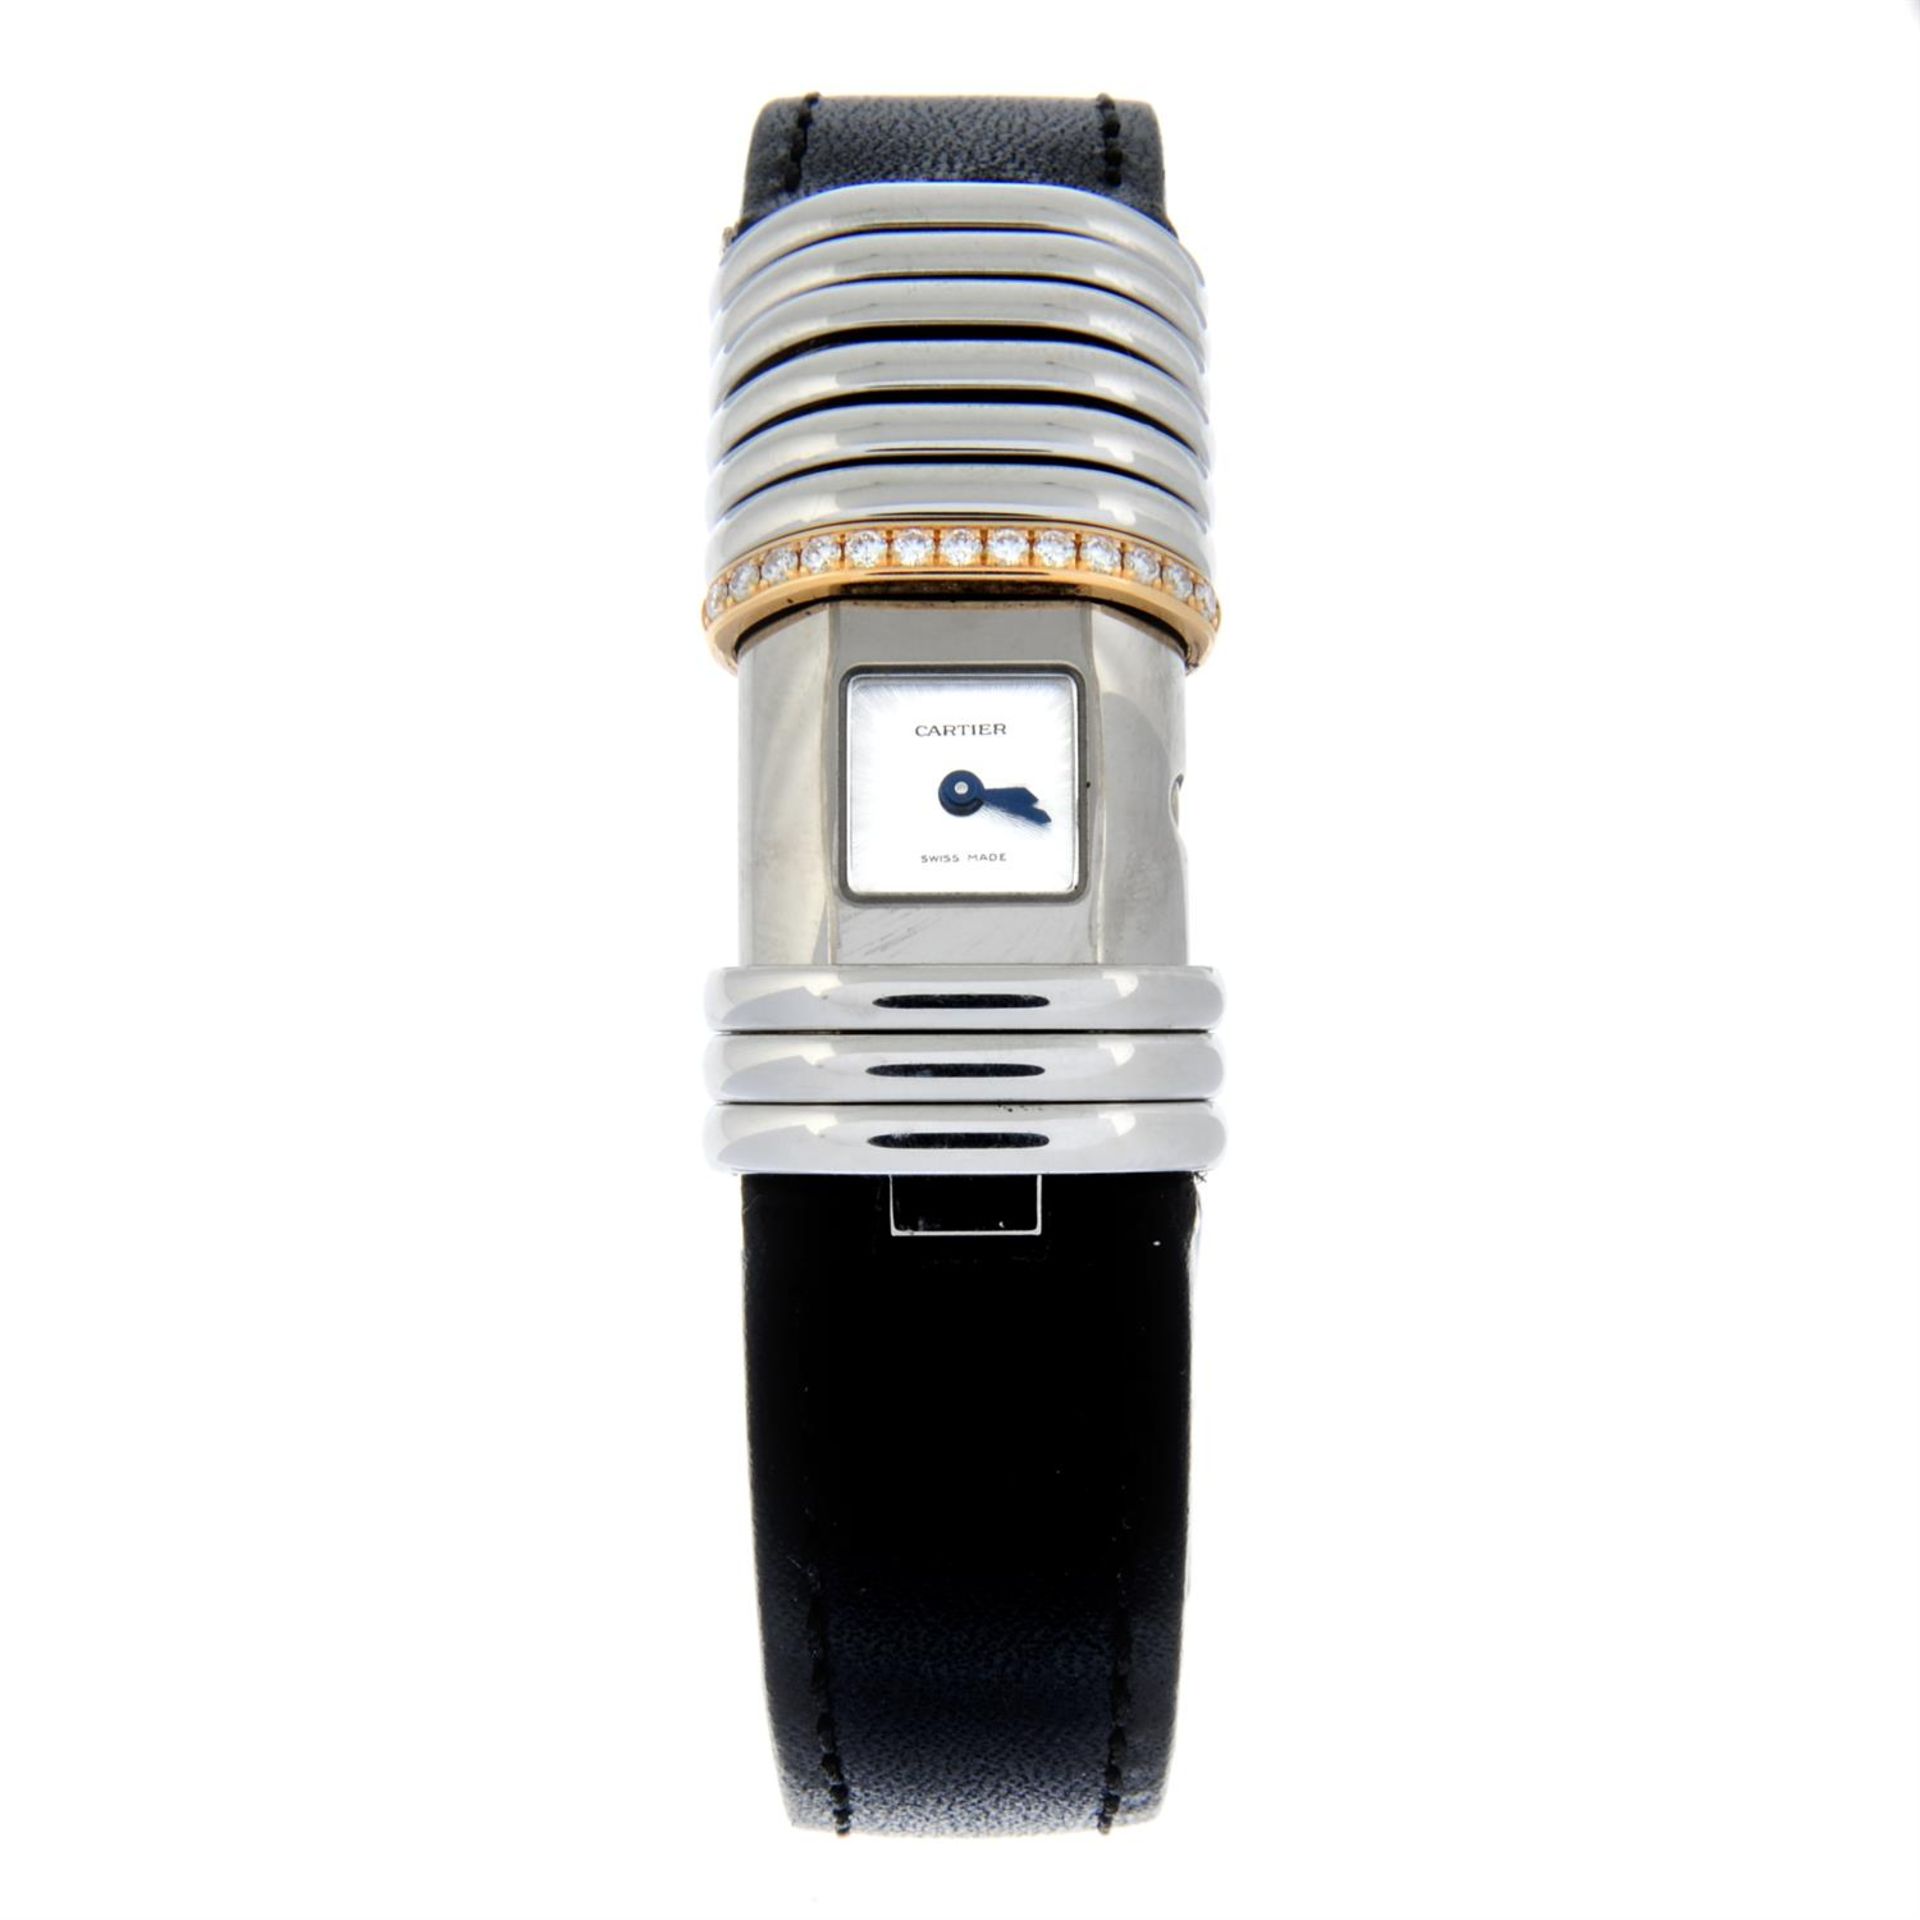 CARTIER - a bi-metal Declaration wrist watch, 15mm.